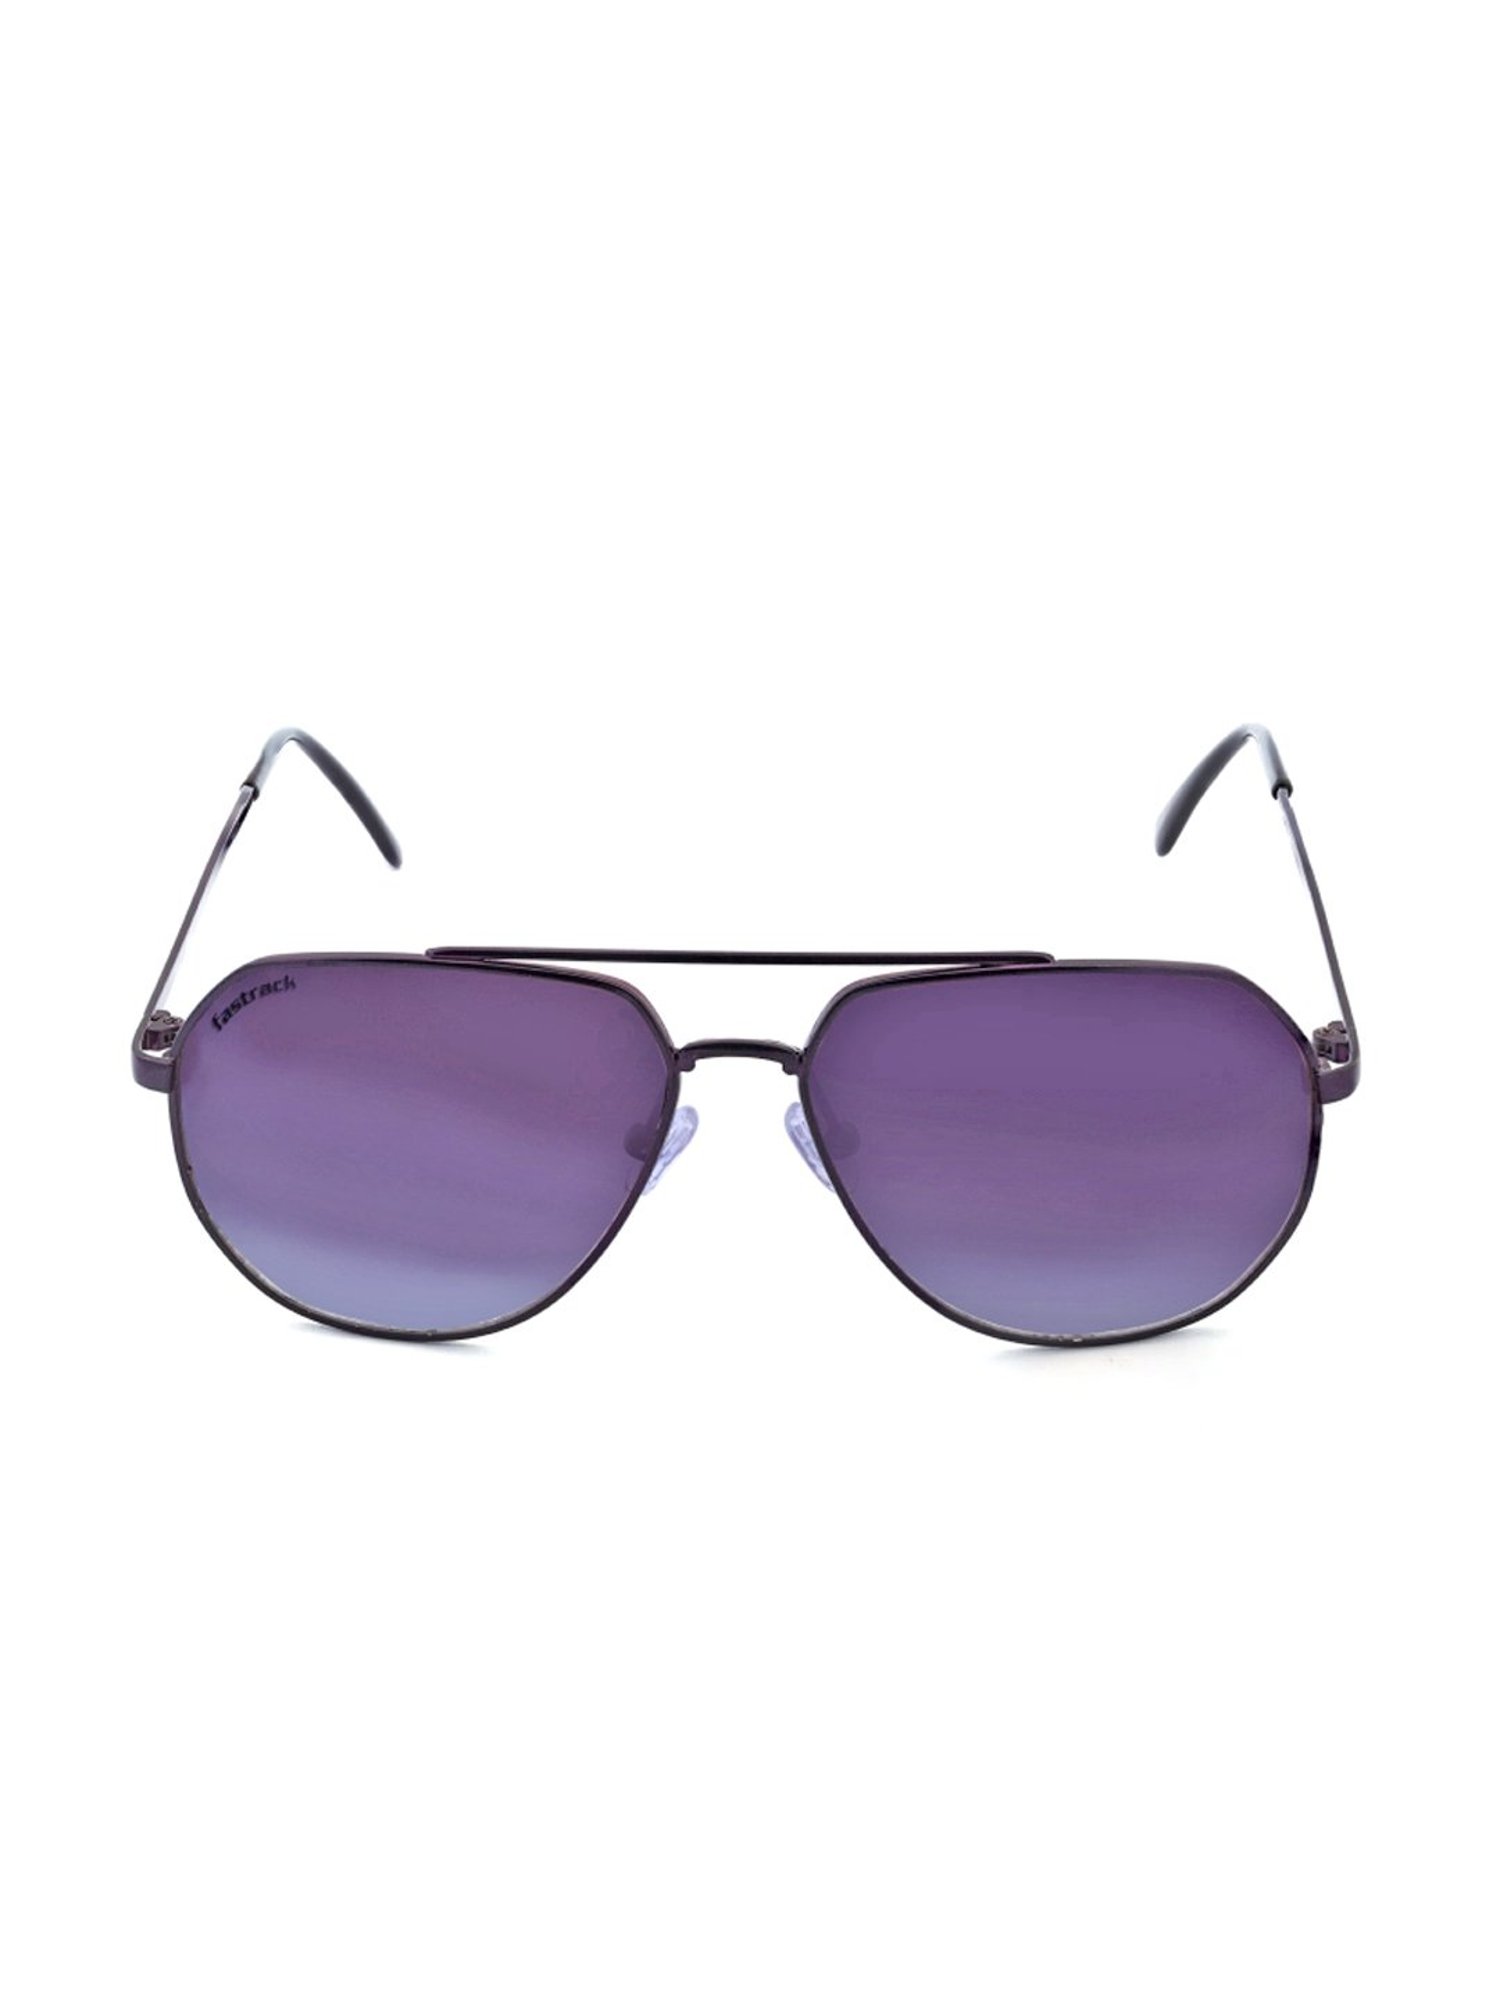 Johnny Depp Robert Downey Mens Women Sunglasses Oceanic Purple Lens Elegant  NEW | eBay